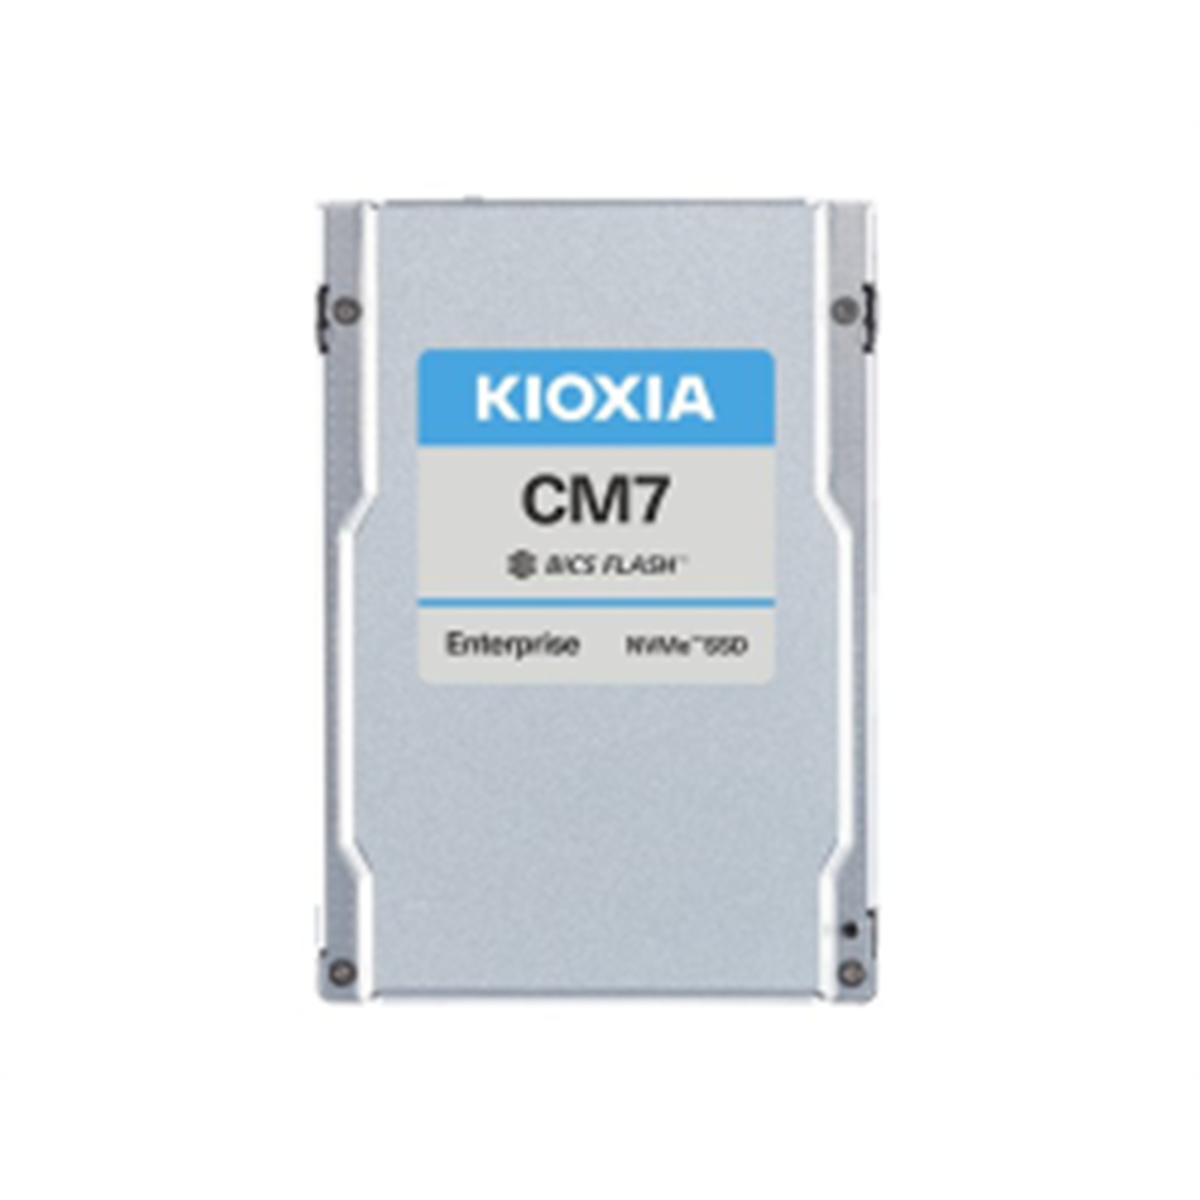 Kioxia CM7-R Series KCMYXRUG15T3 - SSD - Enterprise Read Intensive - 15360 GB - PCI